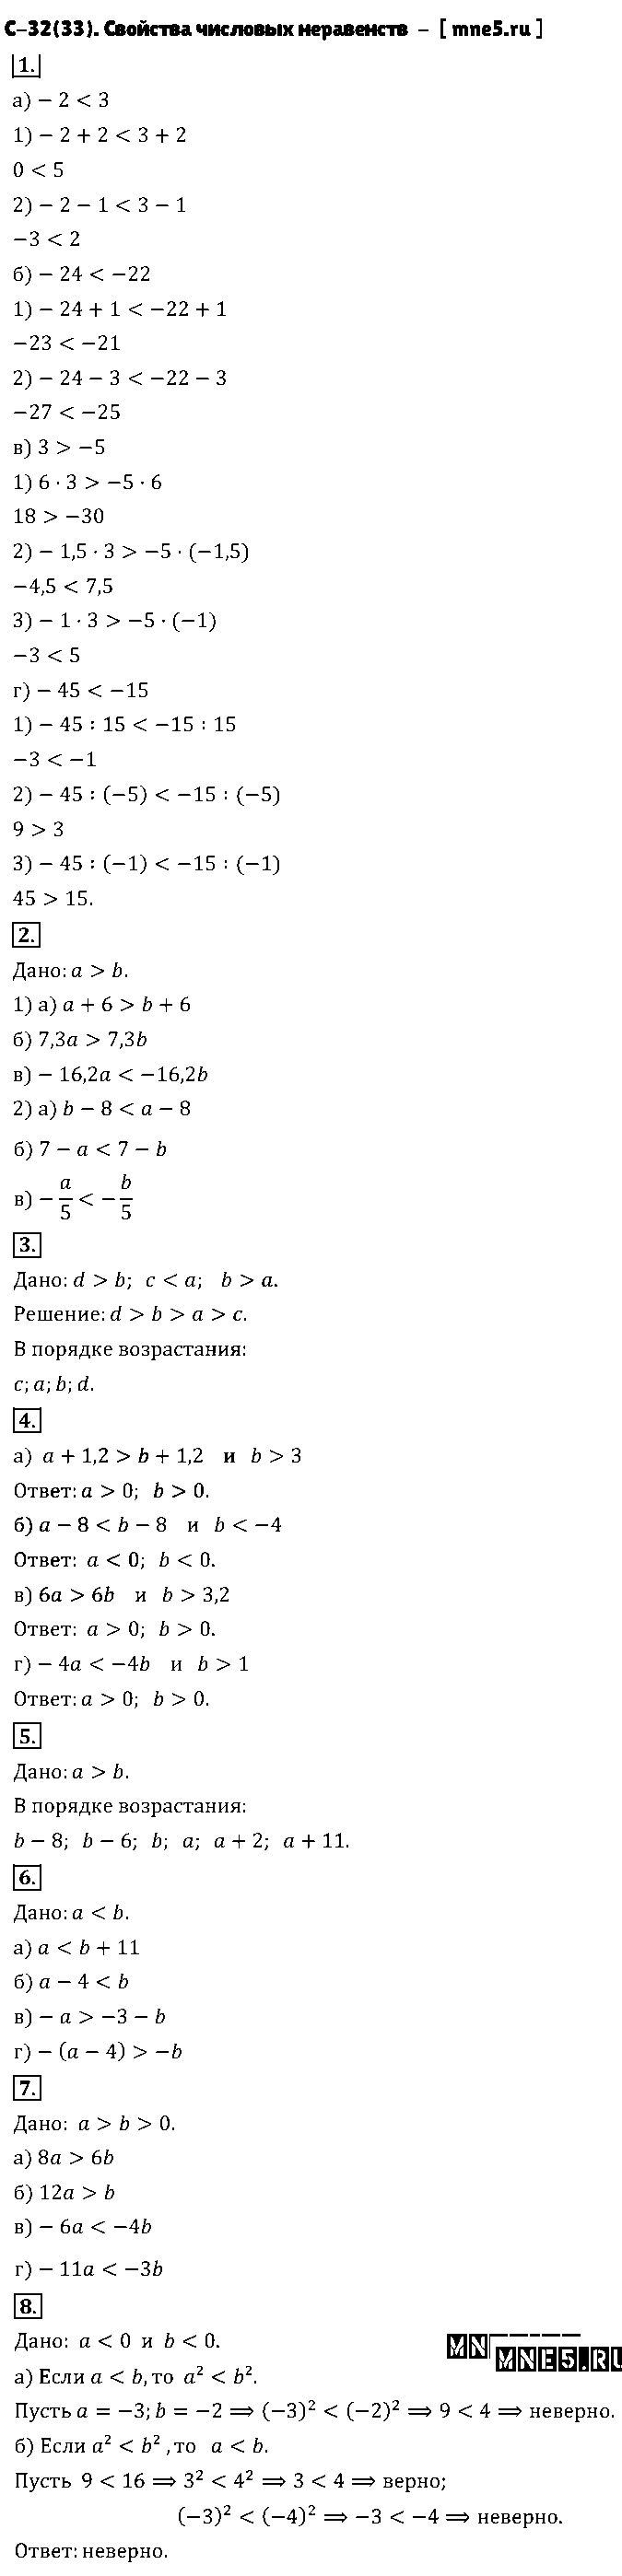 ГДЗ Алгебра 8 класс - С-32(33). Свойства числовых неравенств